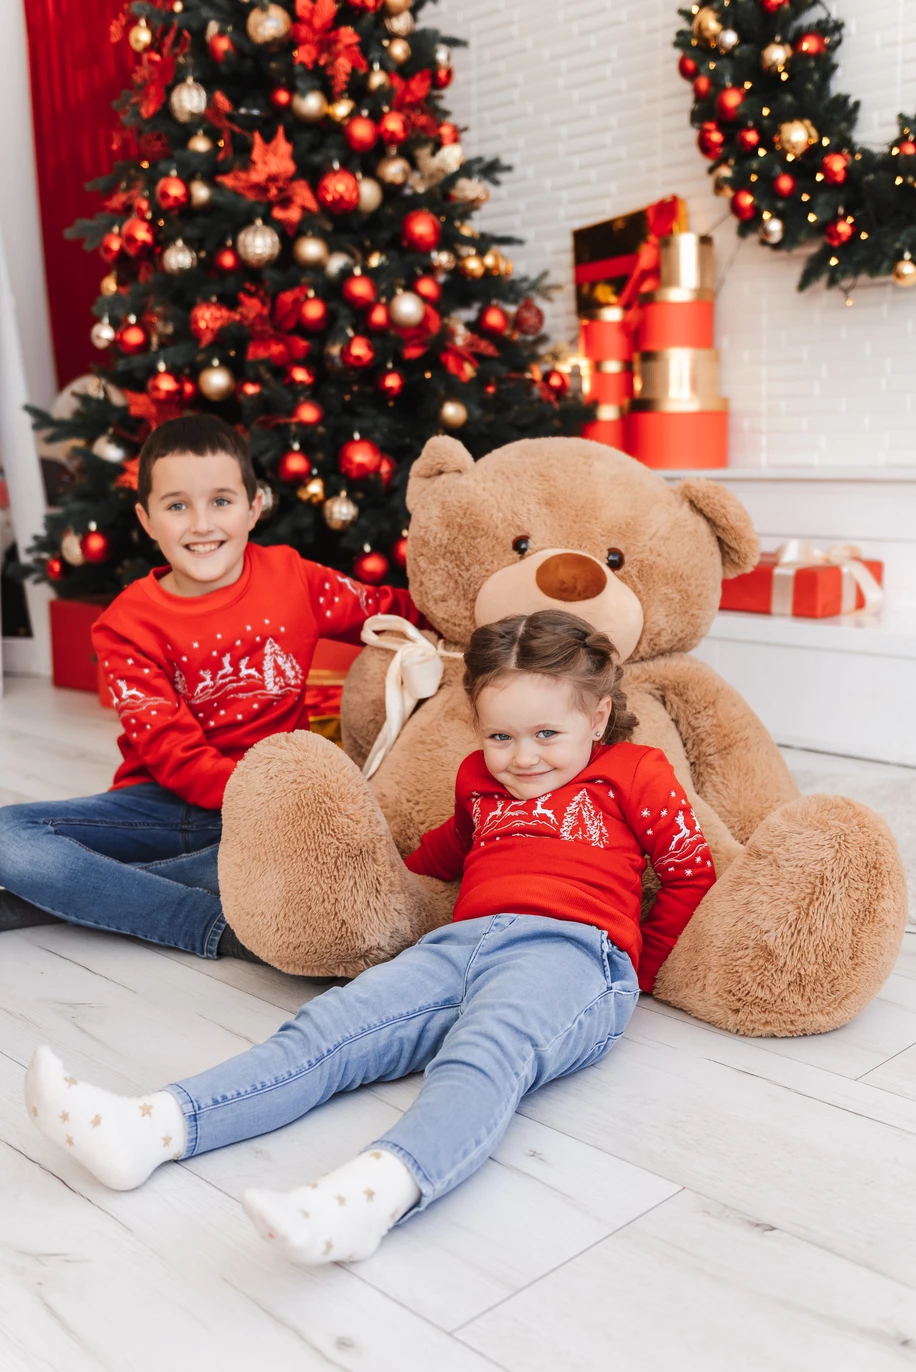 Дитяча радість новорічного свята: гарна дівчинка та хлопчик на фото, у святкових кофтах, виражають щастя та веселощі цього особливого часу